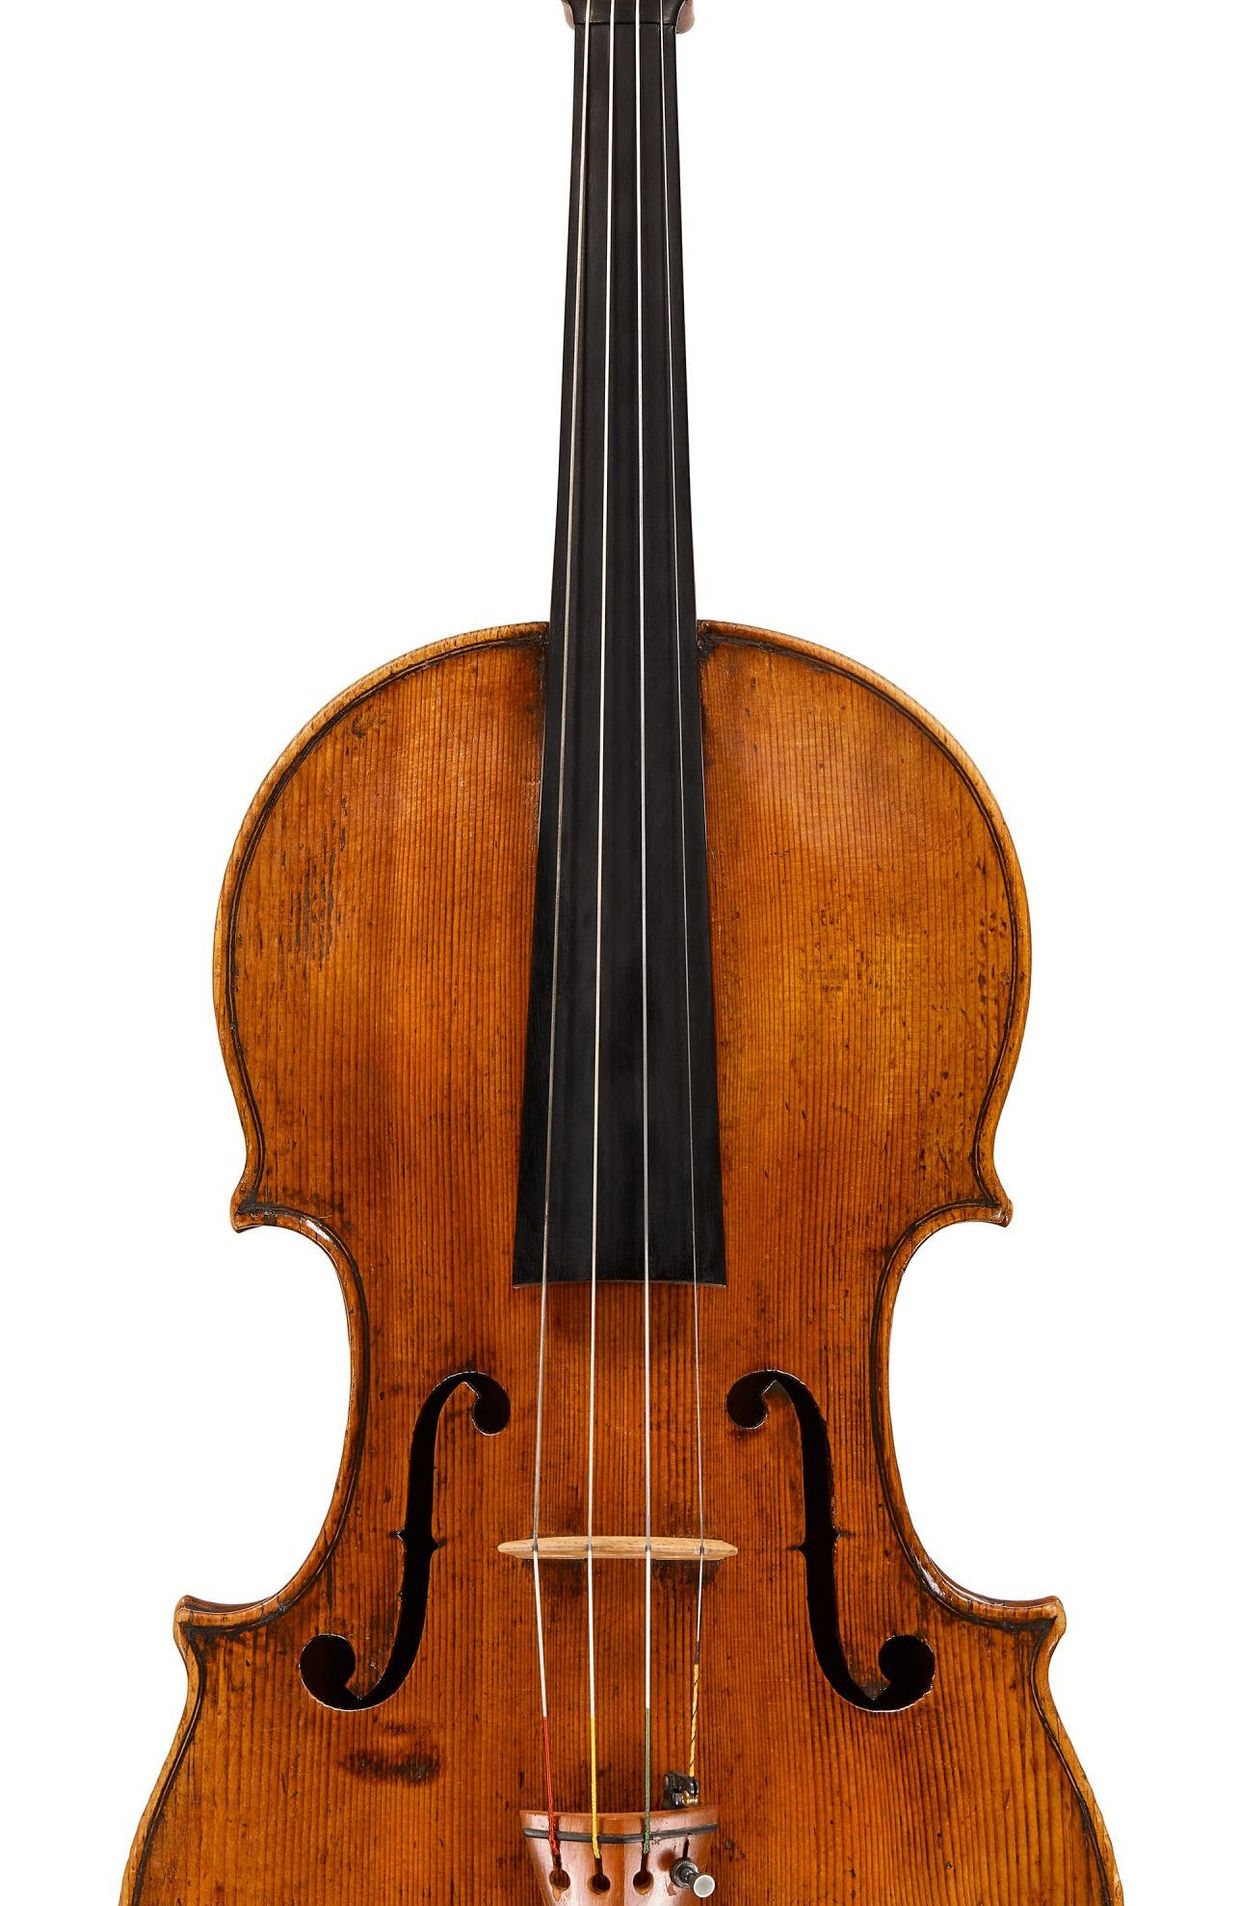 L’ancien violon Guadagnini de Joshua Bell bientôt vendu aux enchères